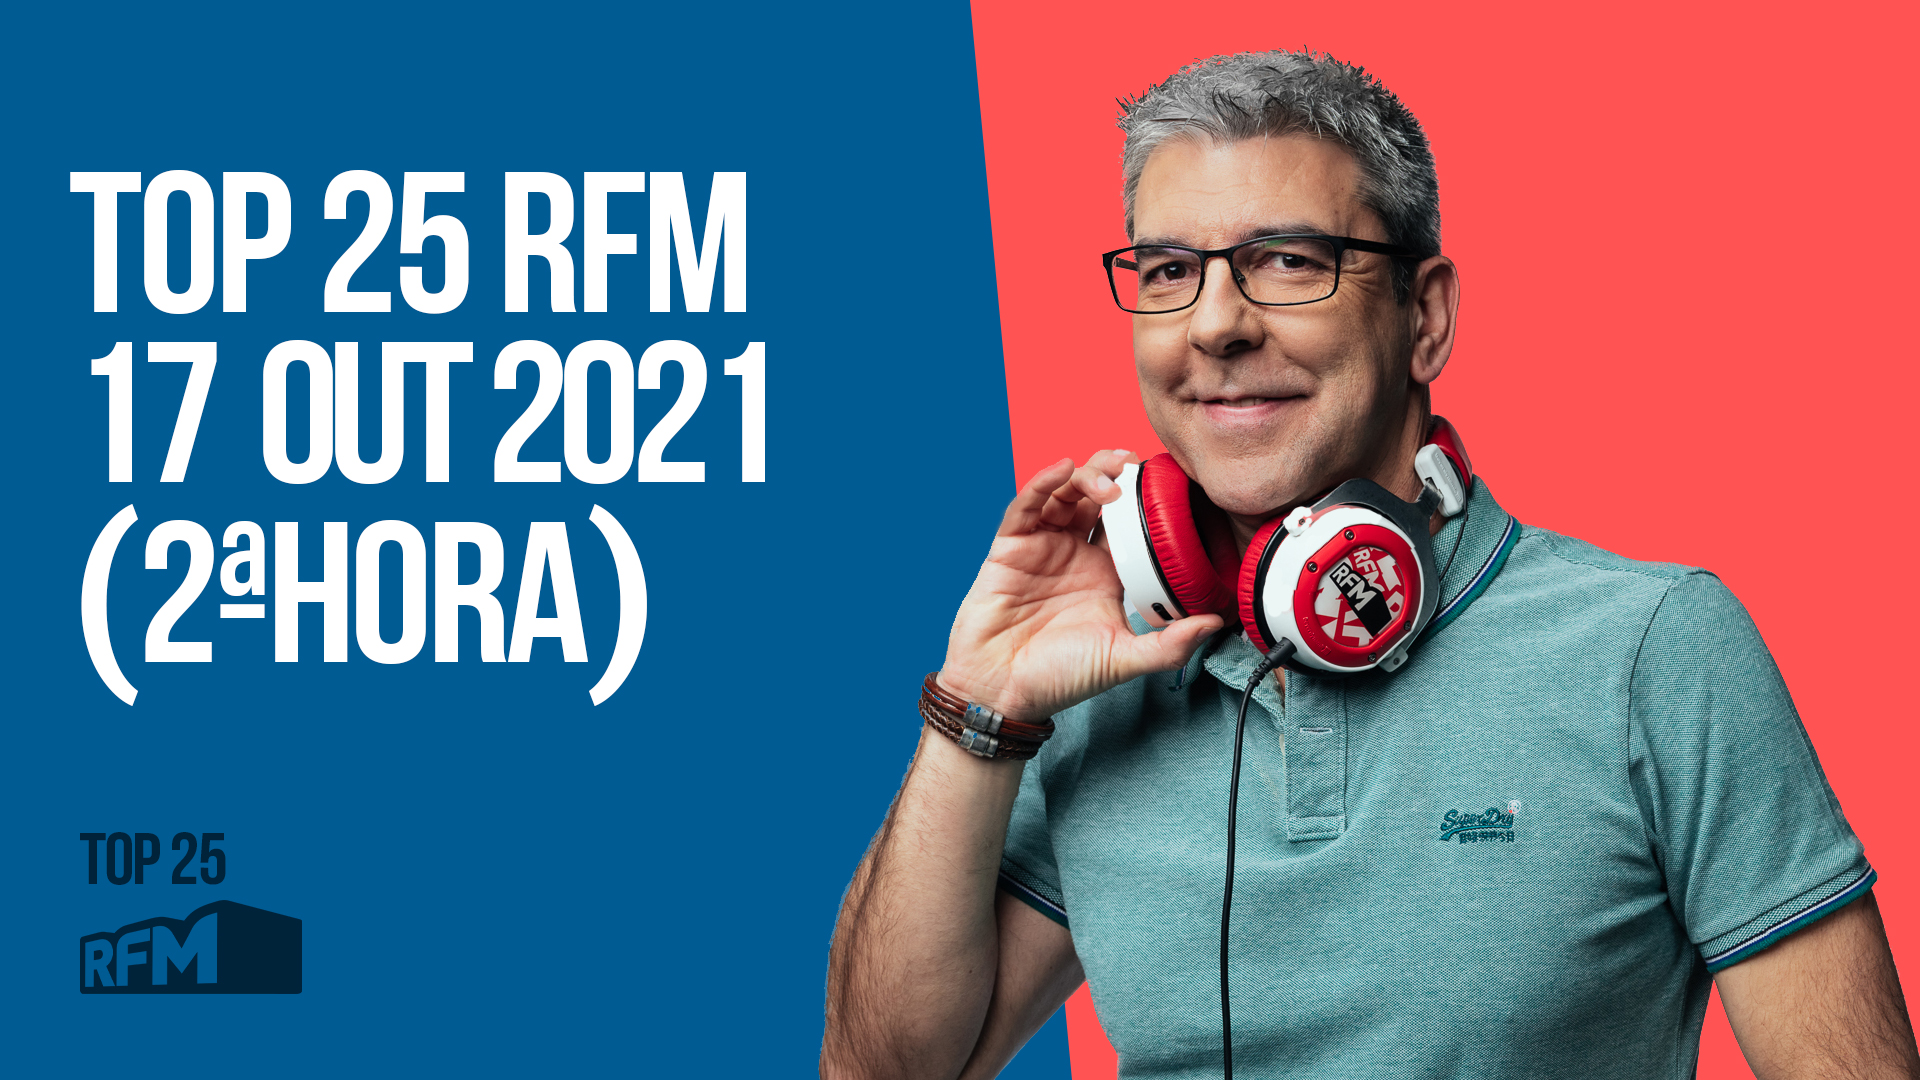 TOP 25 RFM 17 OUTUBRO DE 2021 - 2ª HORA